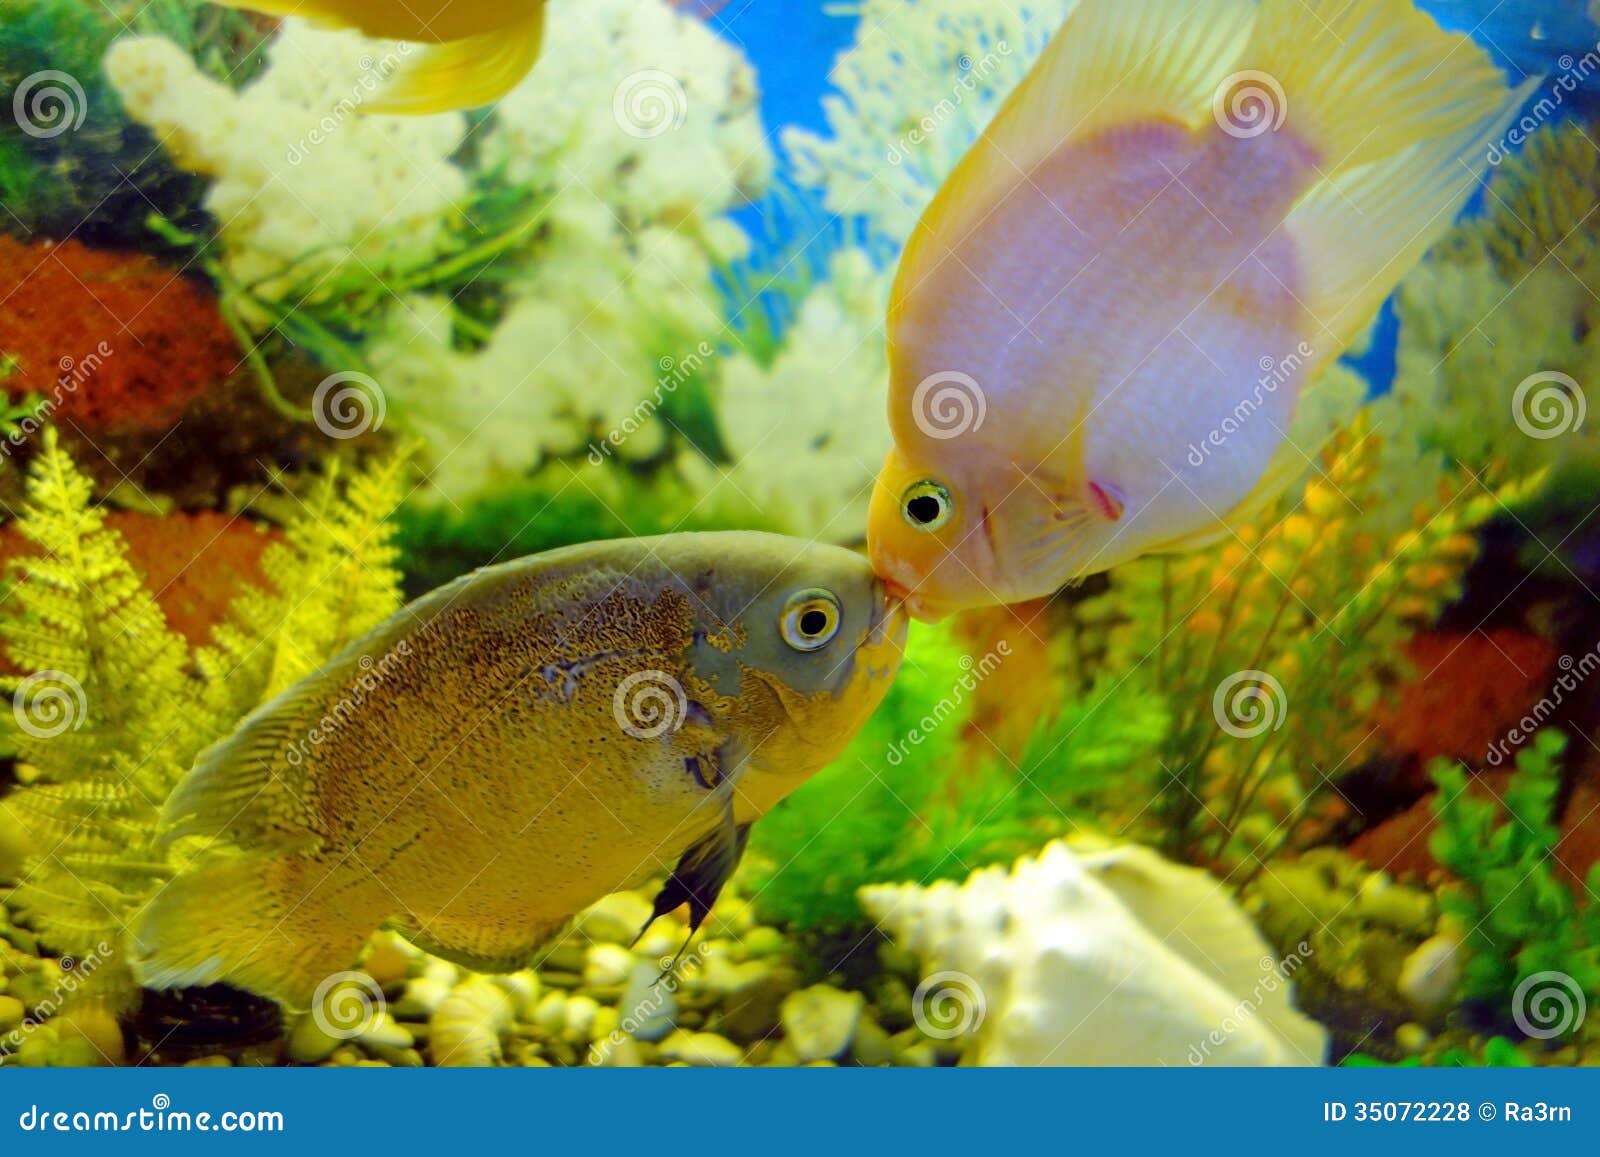 鱼亲吻 库存图片. 图片 包括有 橙色, 热带, 颜色, 水族馆, 水下, 蓝色, 海运, 亲吻, 本质, 宠物 - 7876215